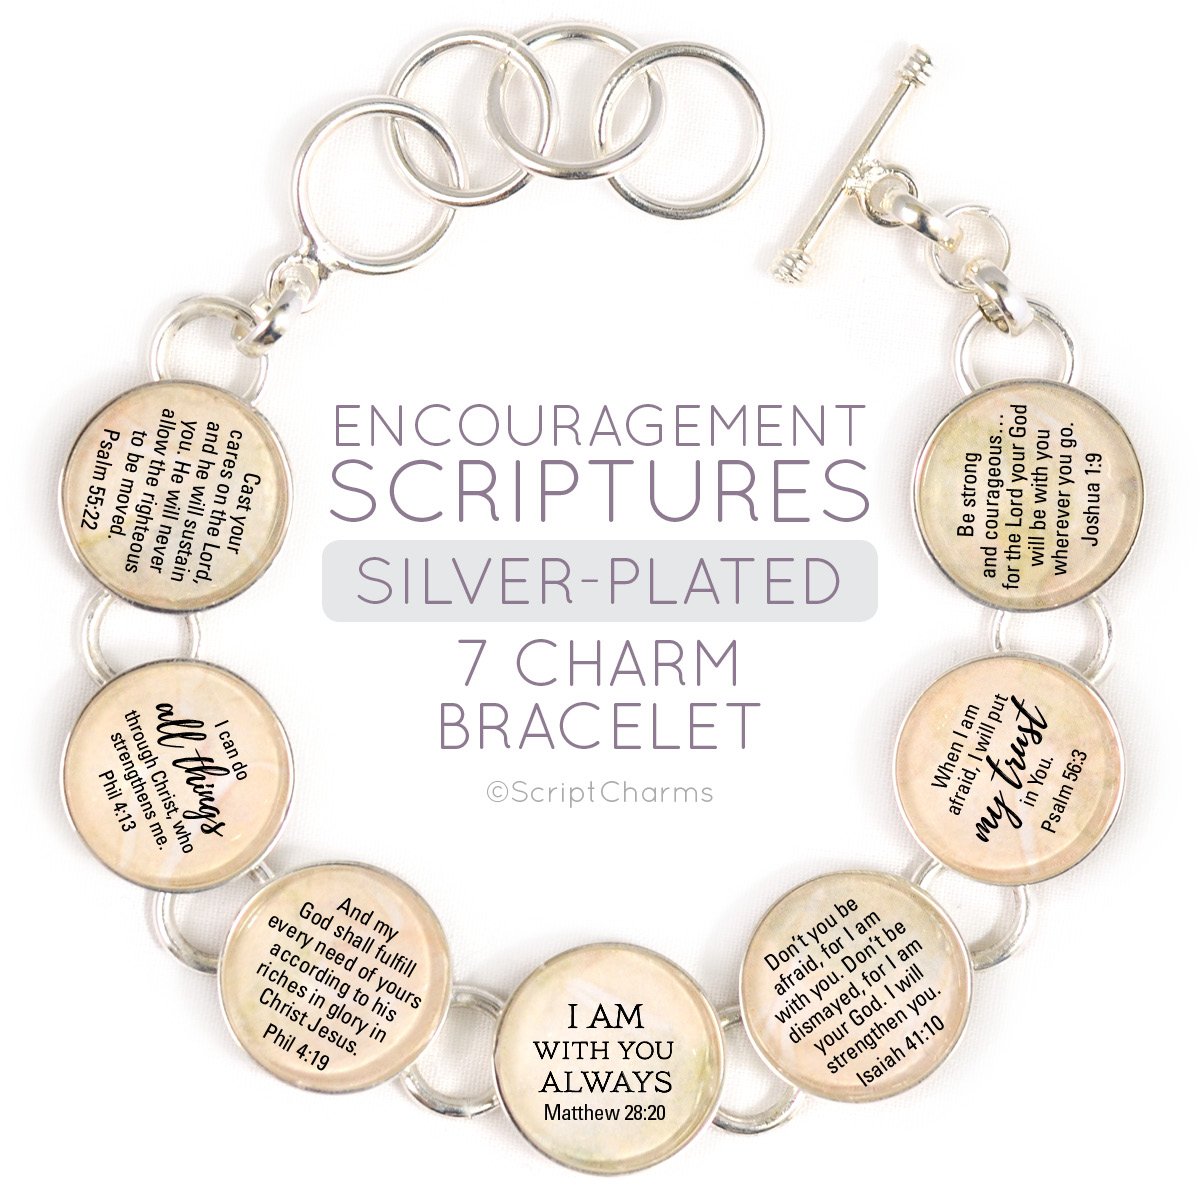 Encouragement Scriptures - Silver-Plated Bible Verse Charm Bracelet